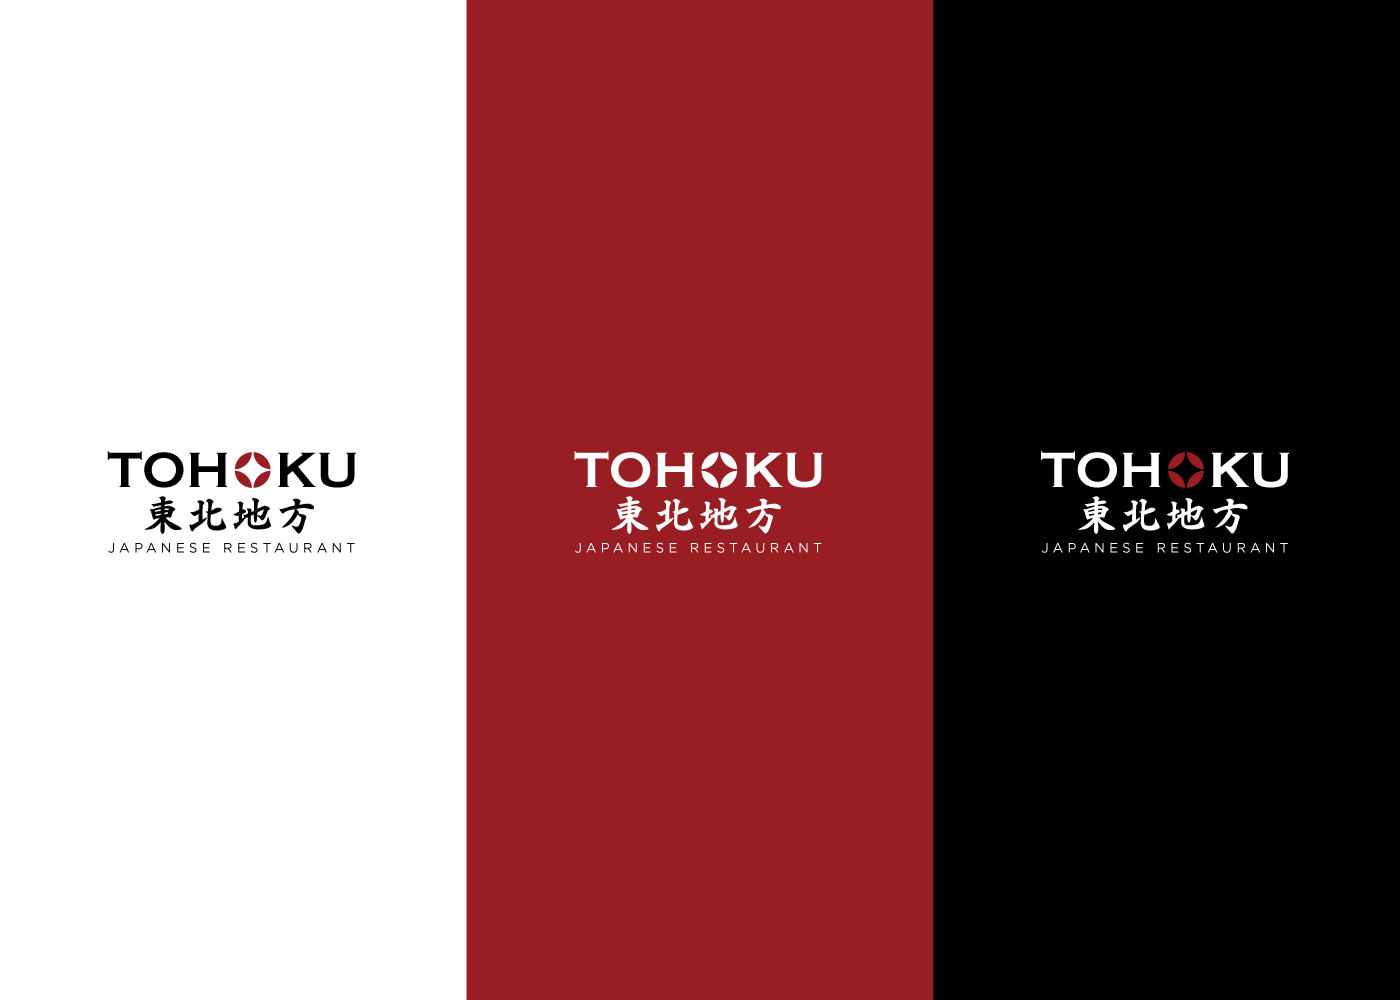 thiết kế nhận diện thương hiệu nhà hàng tohoku nghệ an